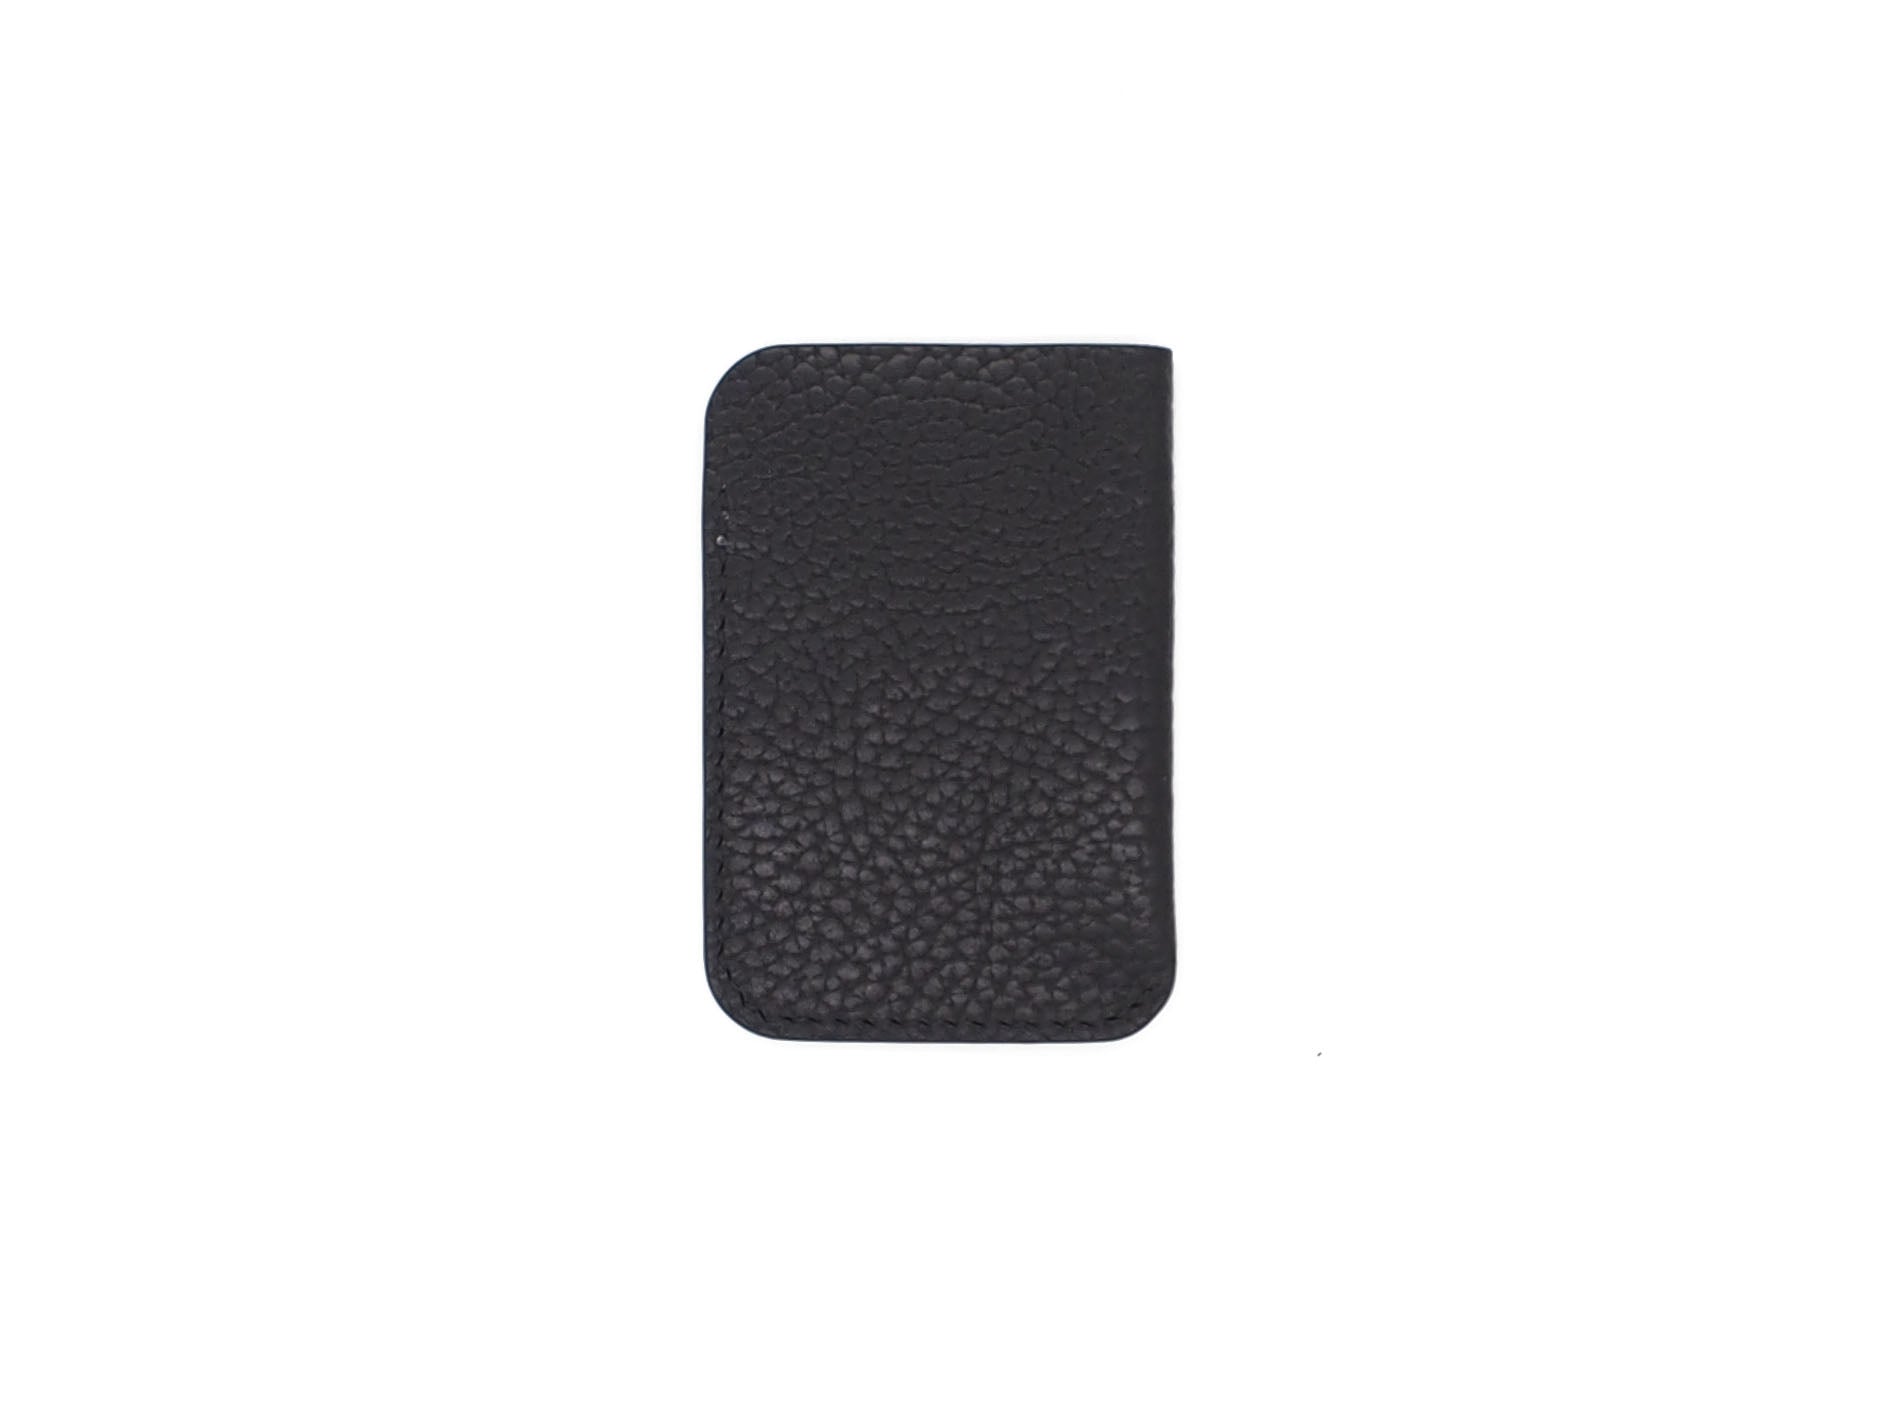 Leeway - Card Sleeve in Pebbled Black